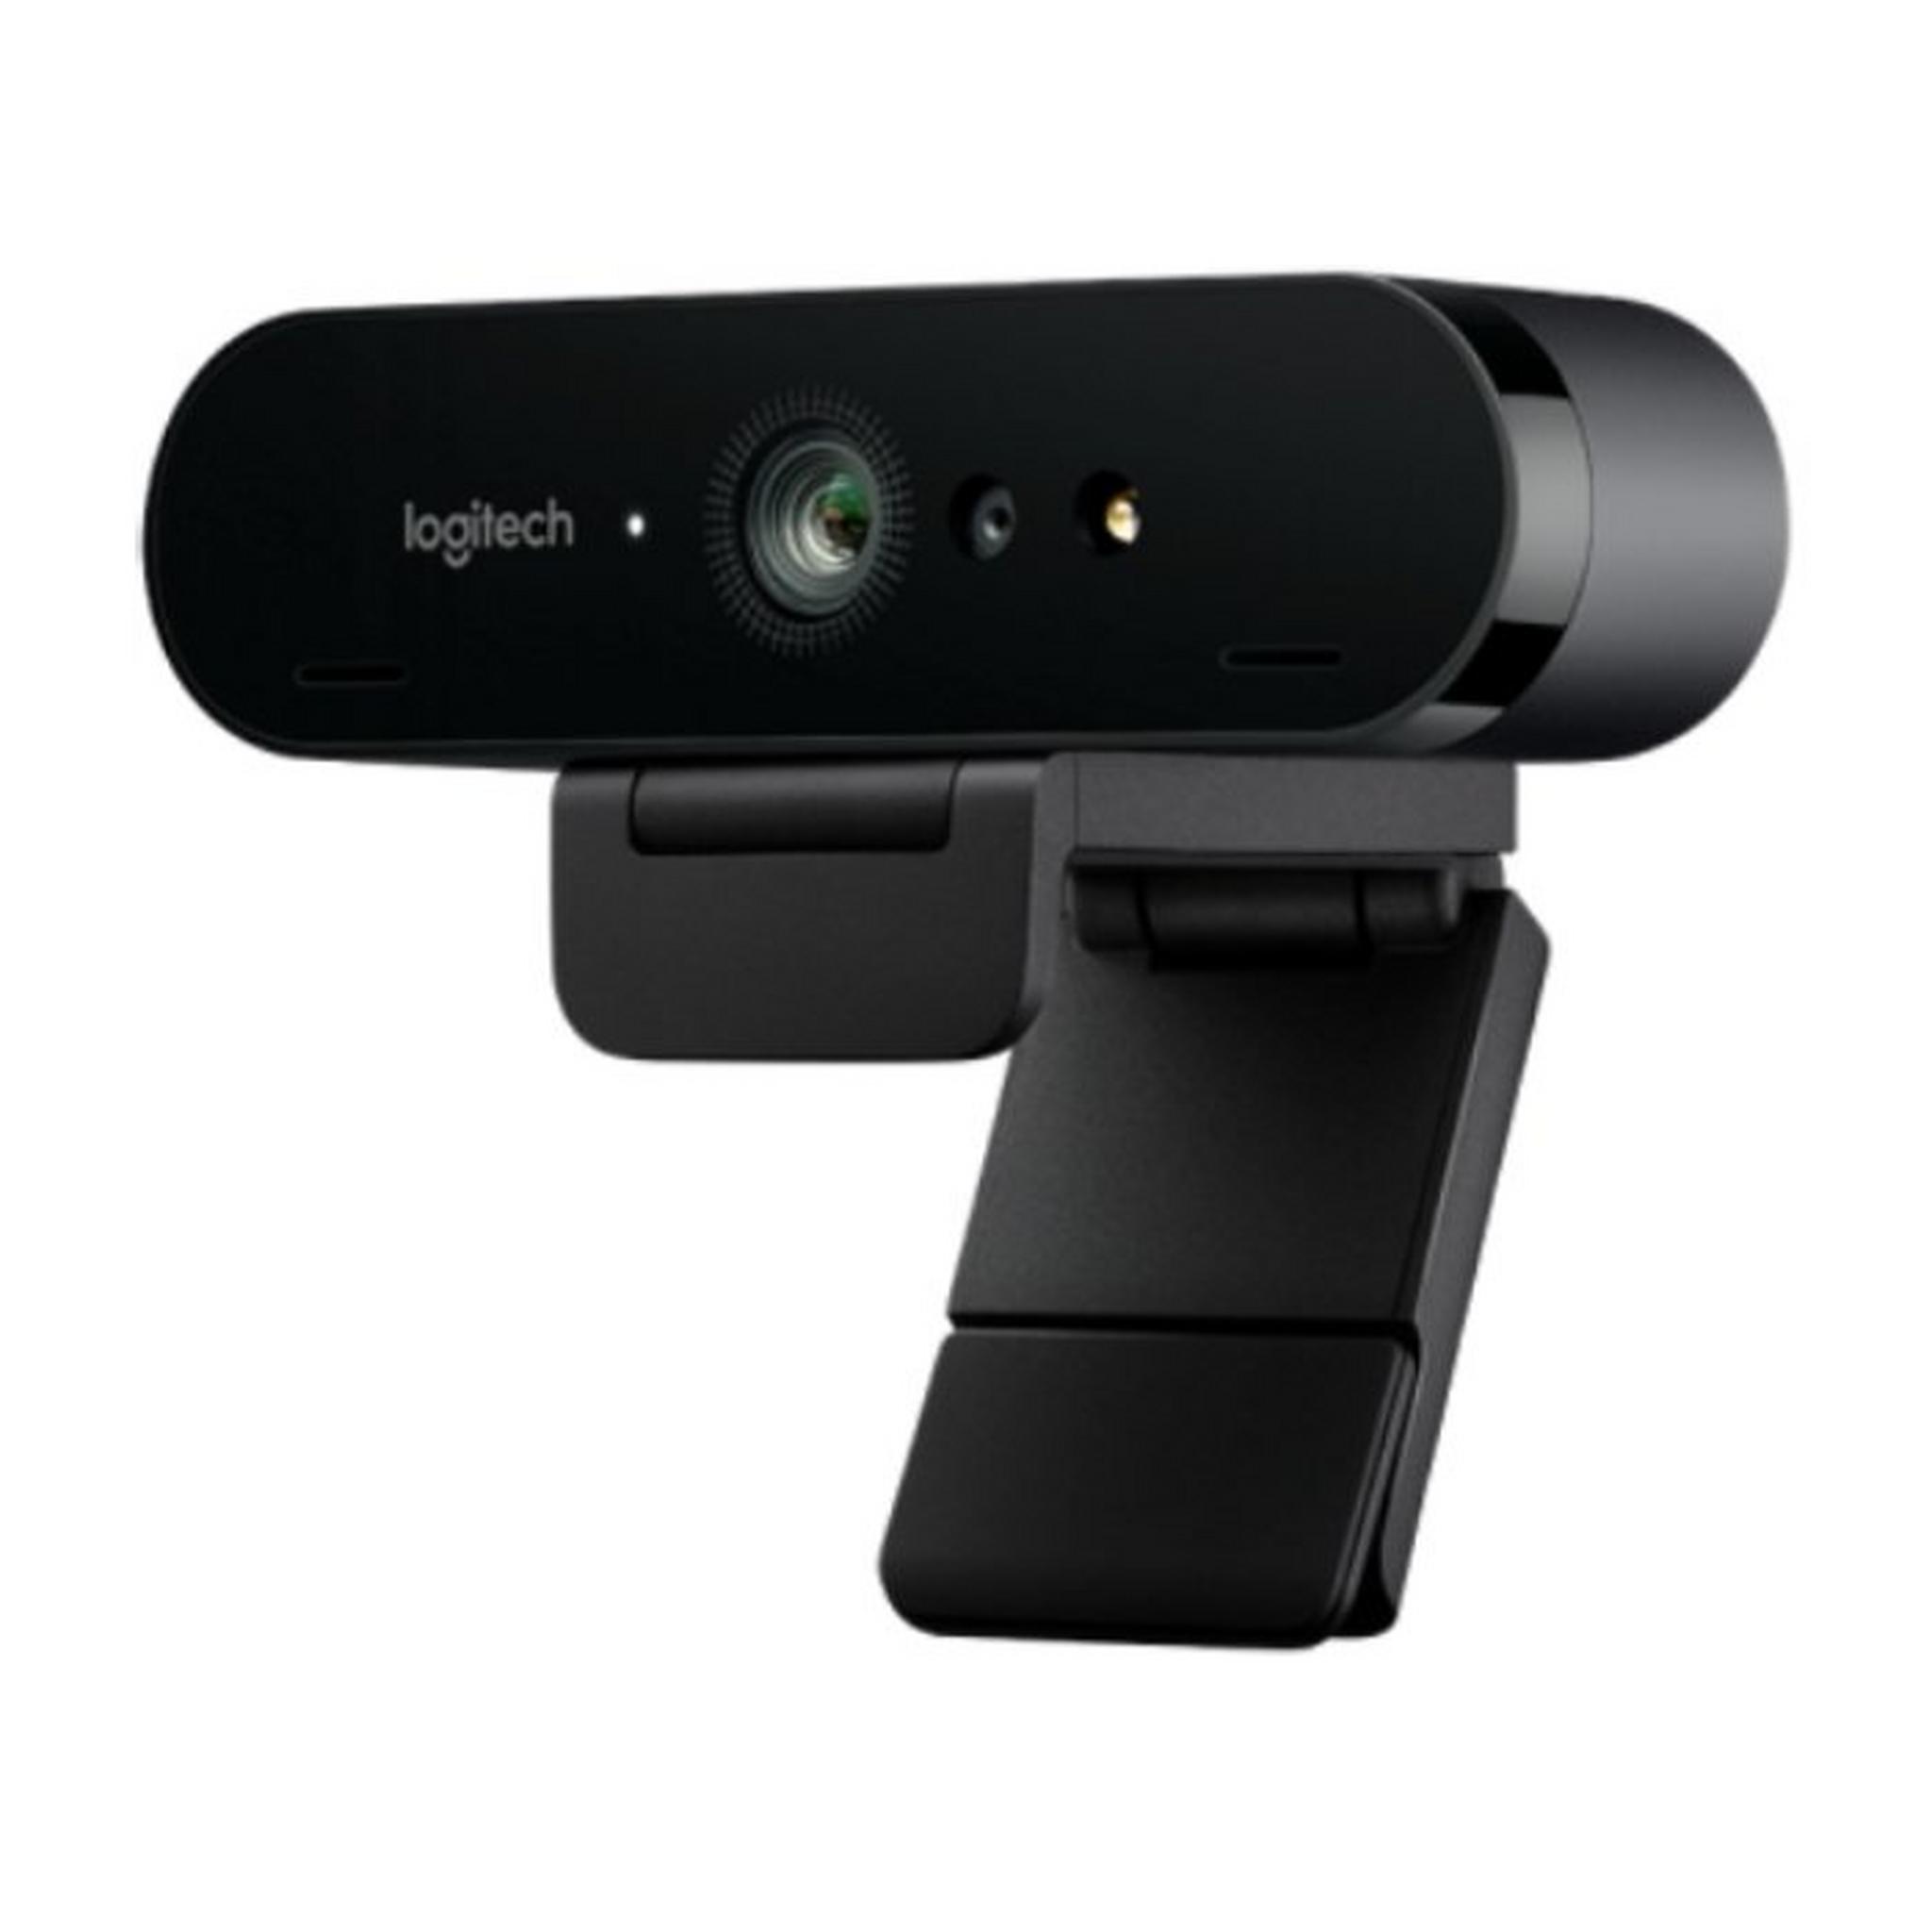 كاميرا الويب الترا 4 كي عالي الوضوح من لوجيتك (960-001194-BRIO)